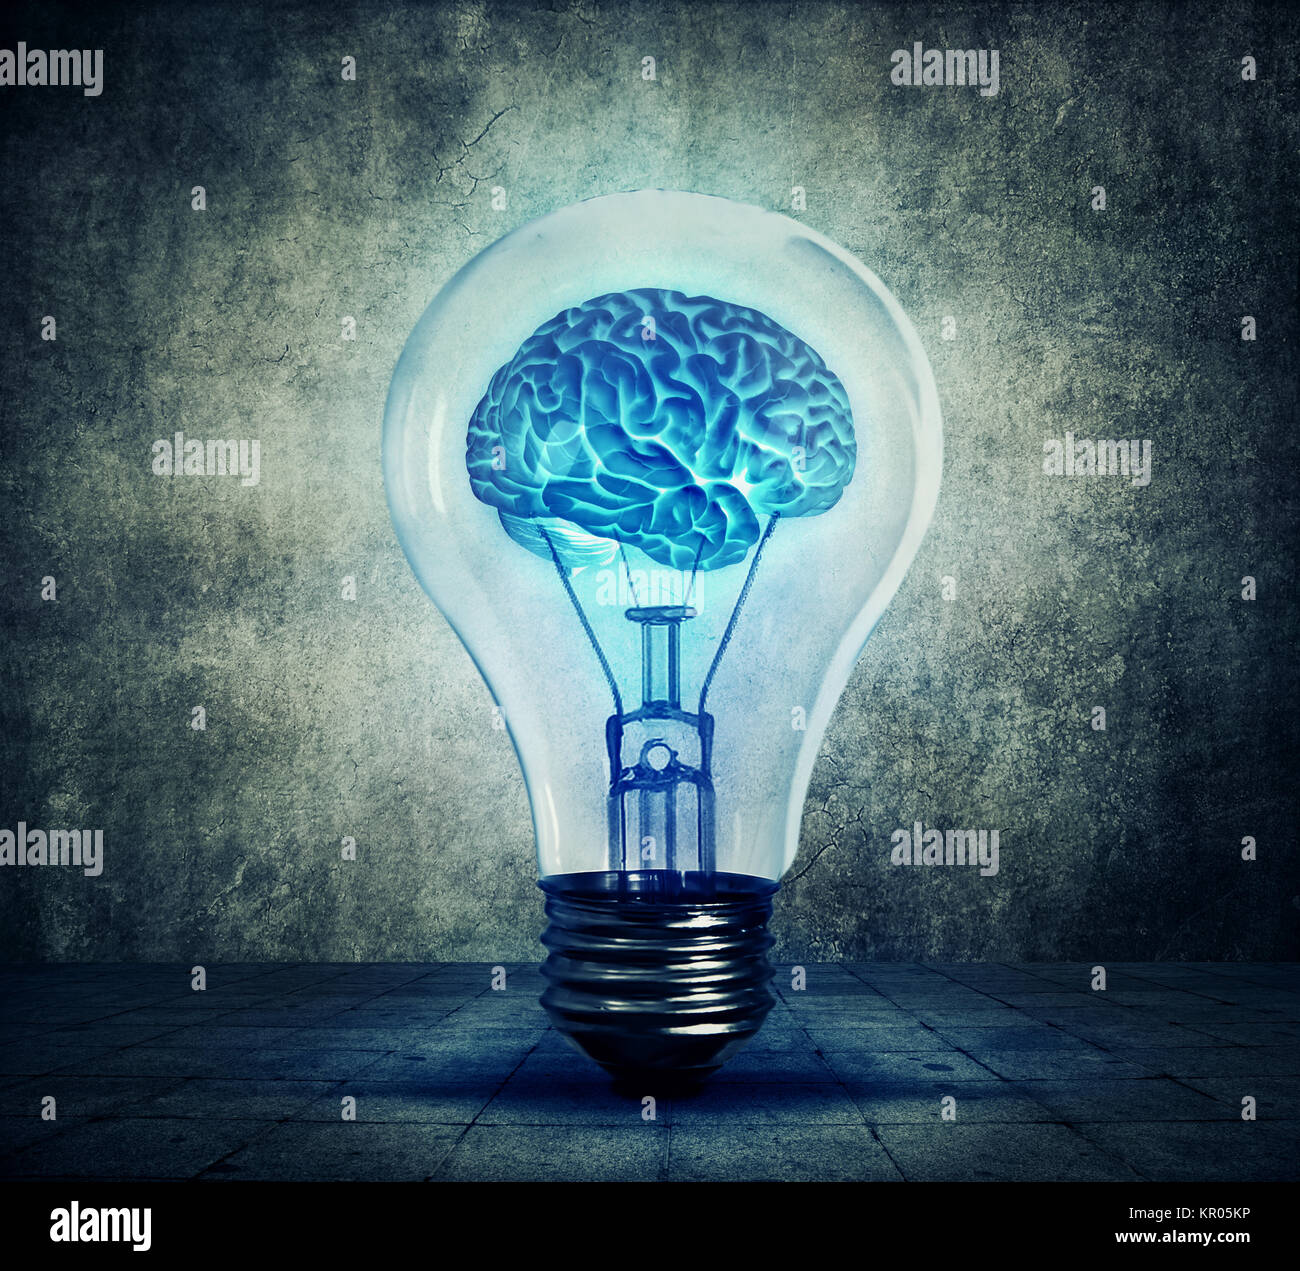 lightbulb brain Stock Photo